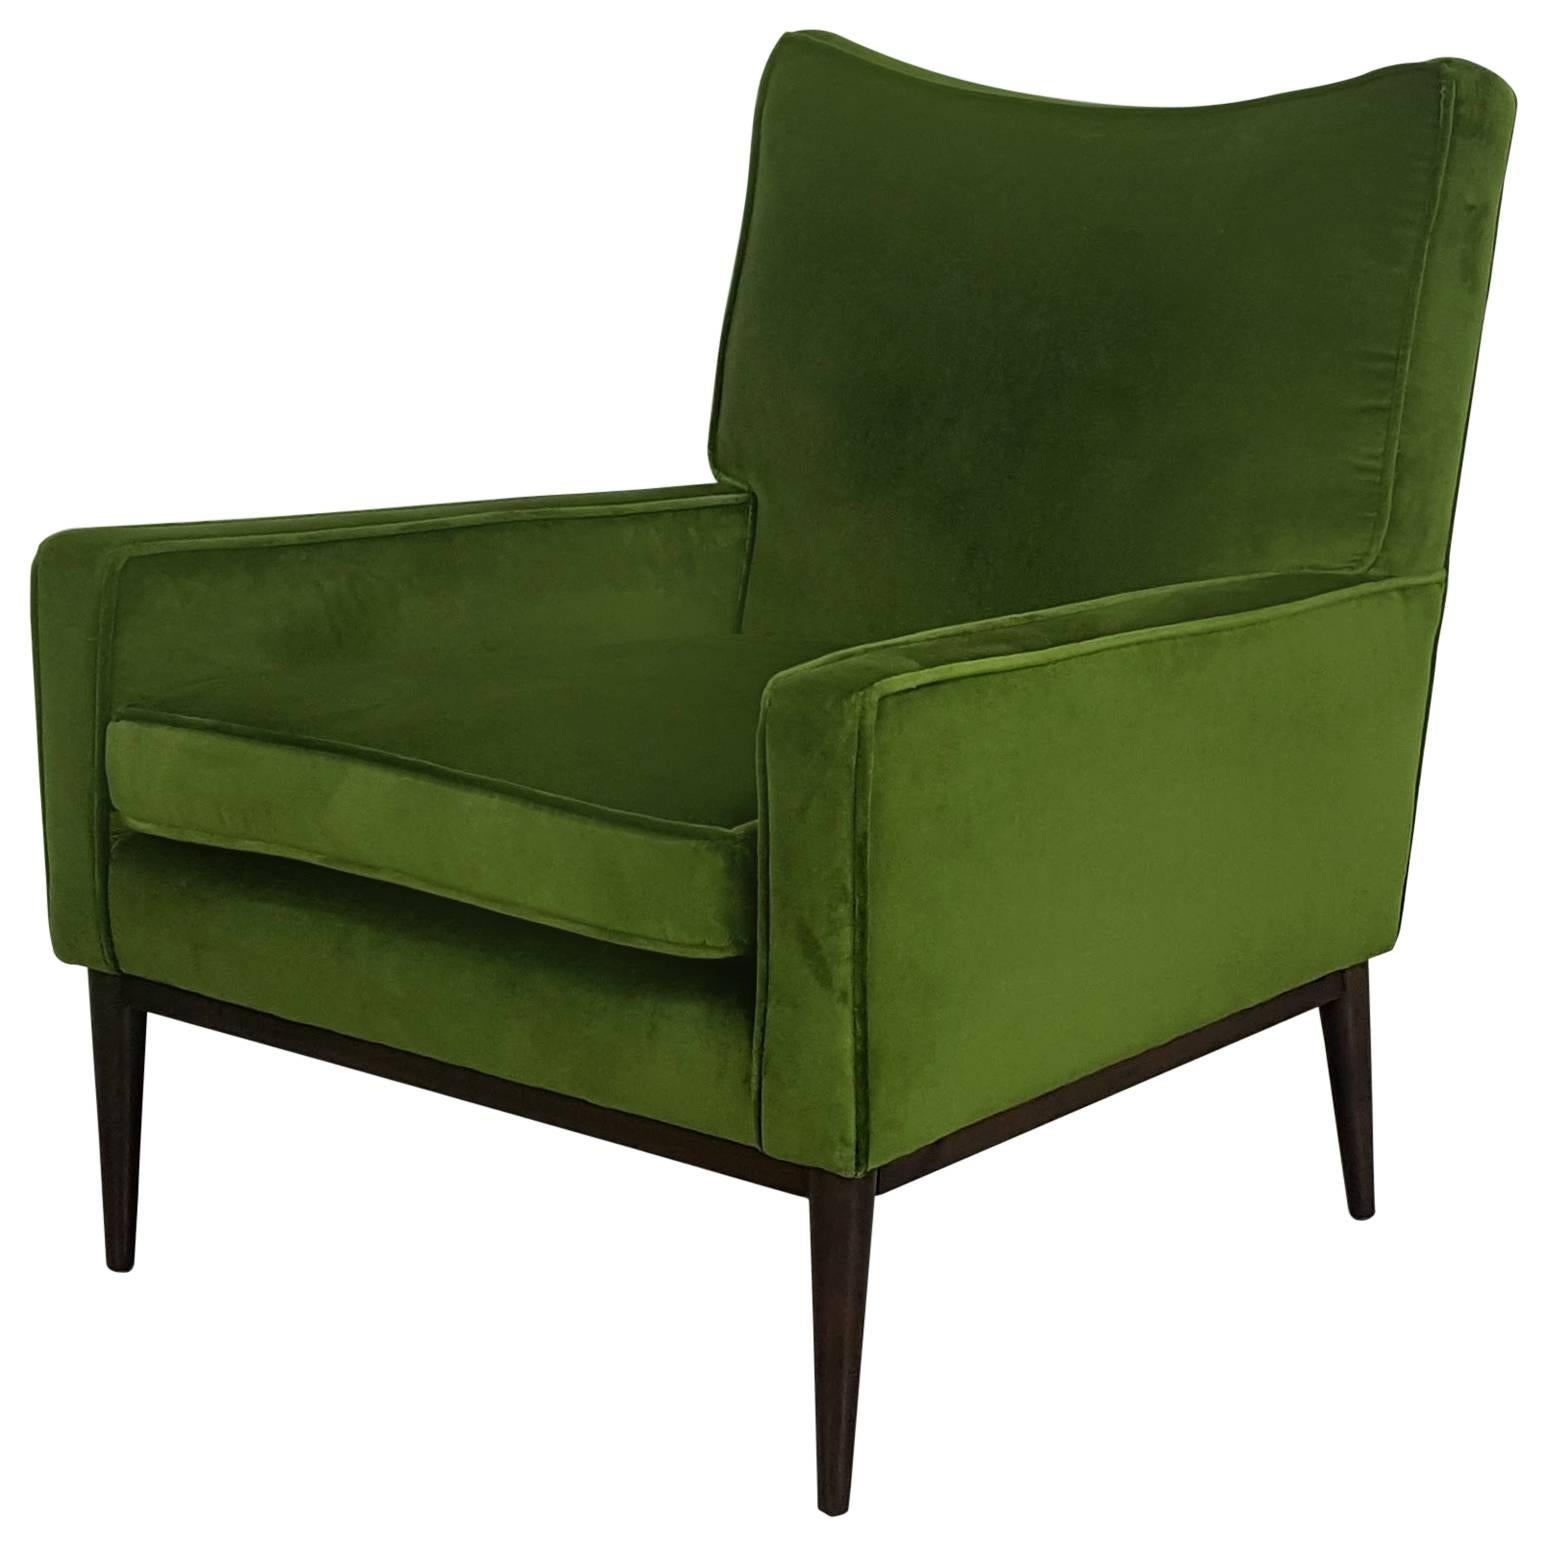 Lounge Chair by Paul McCobb in Lush Green Velvet, 1950s